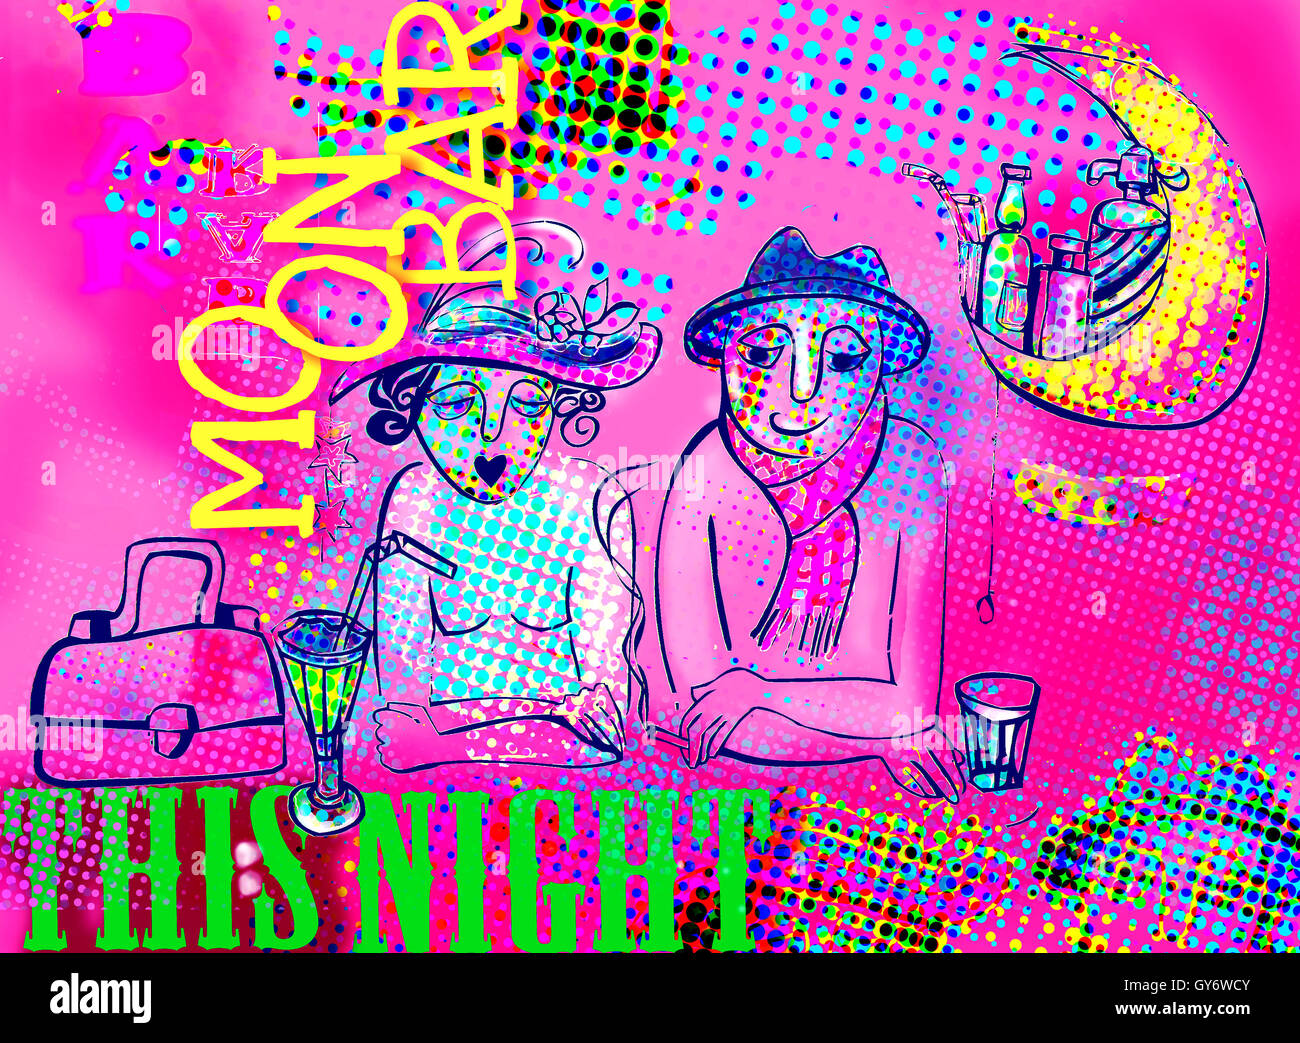 couple in moon buffet illustration Stock Photo